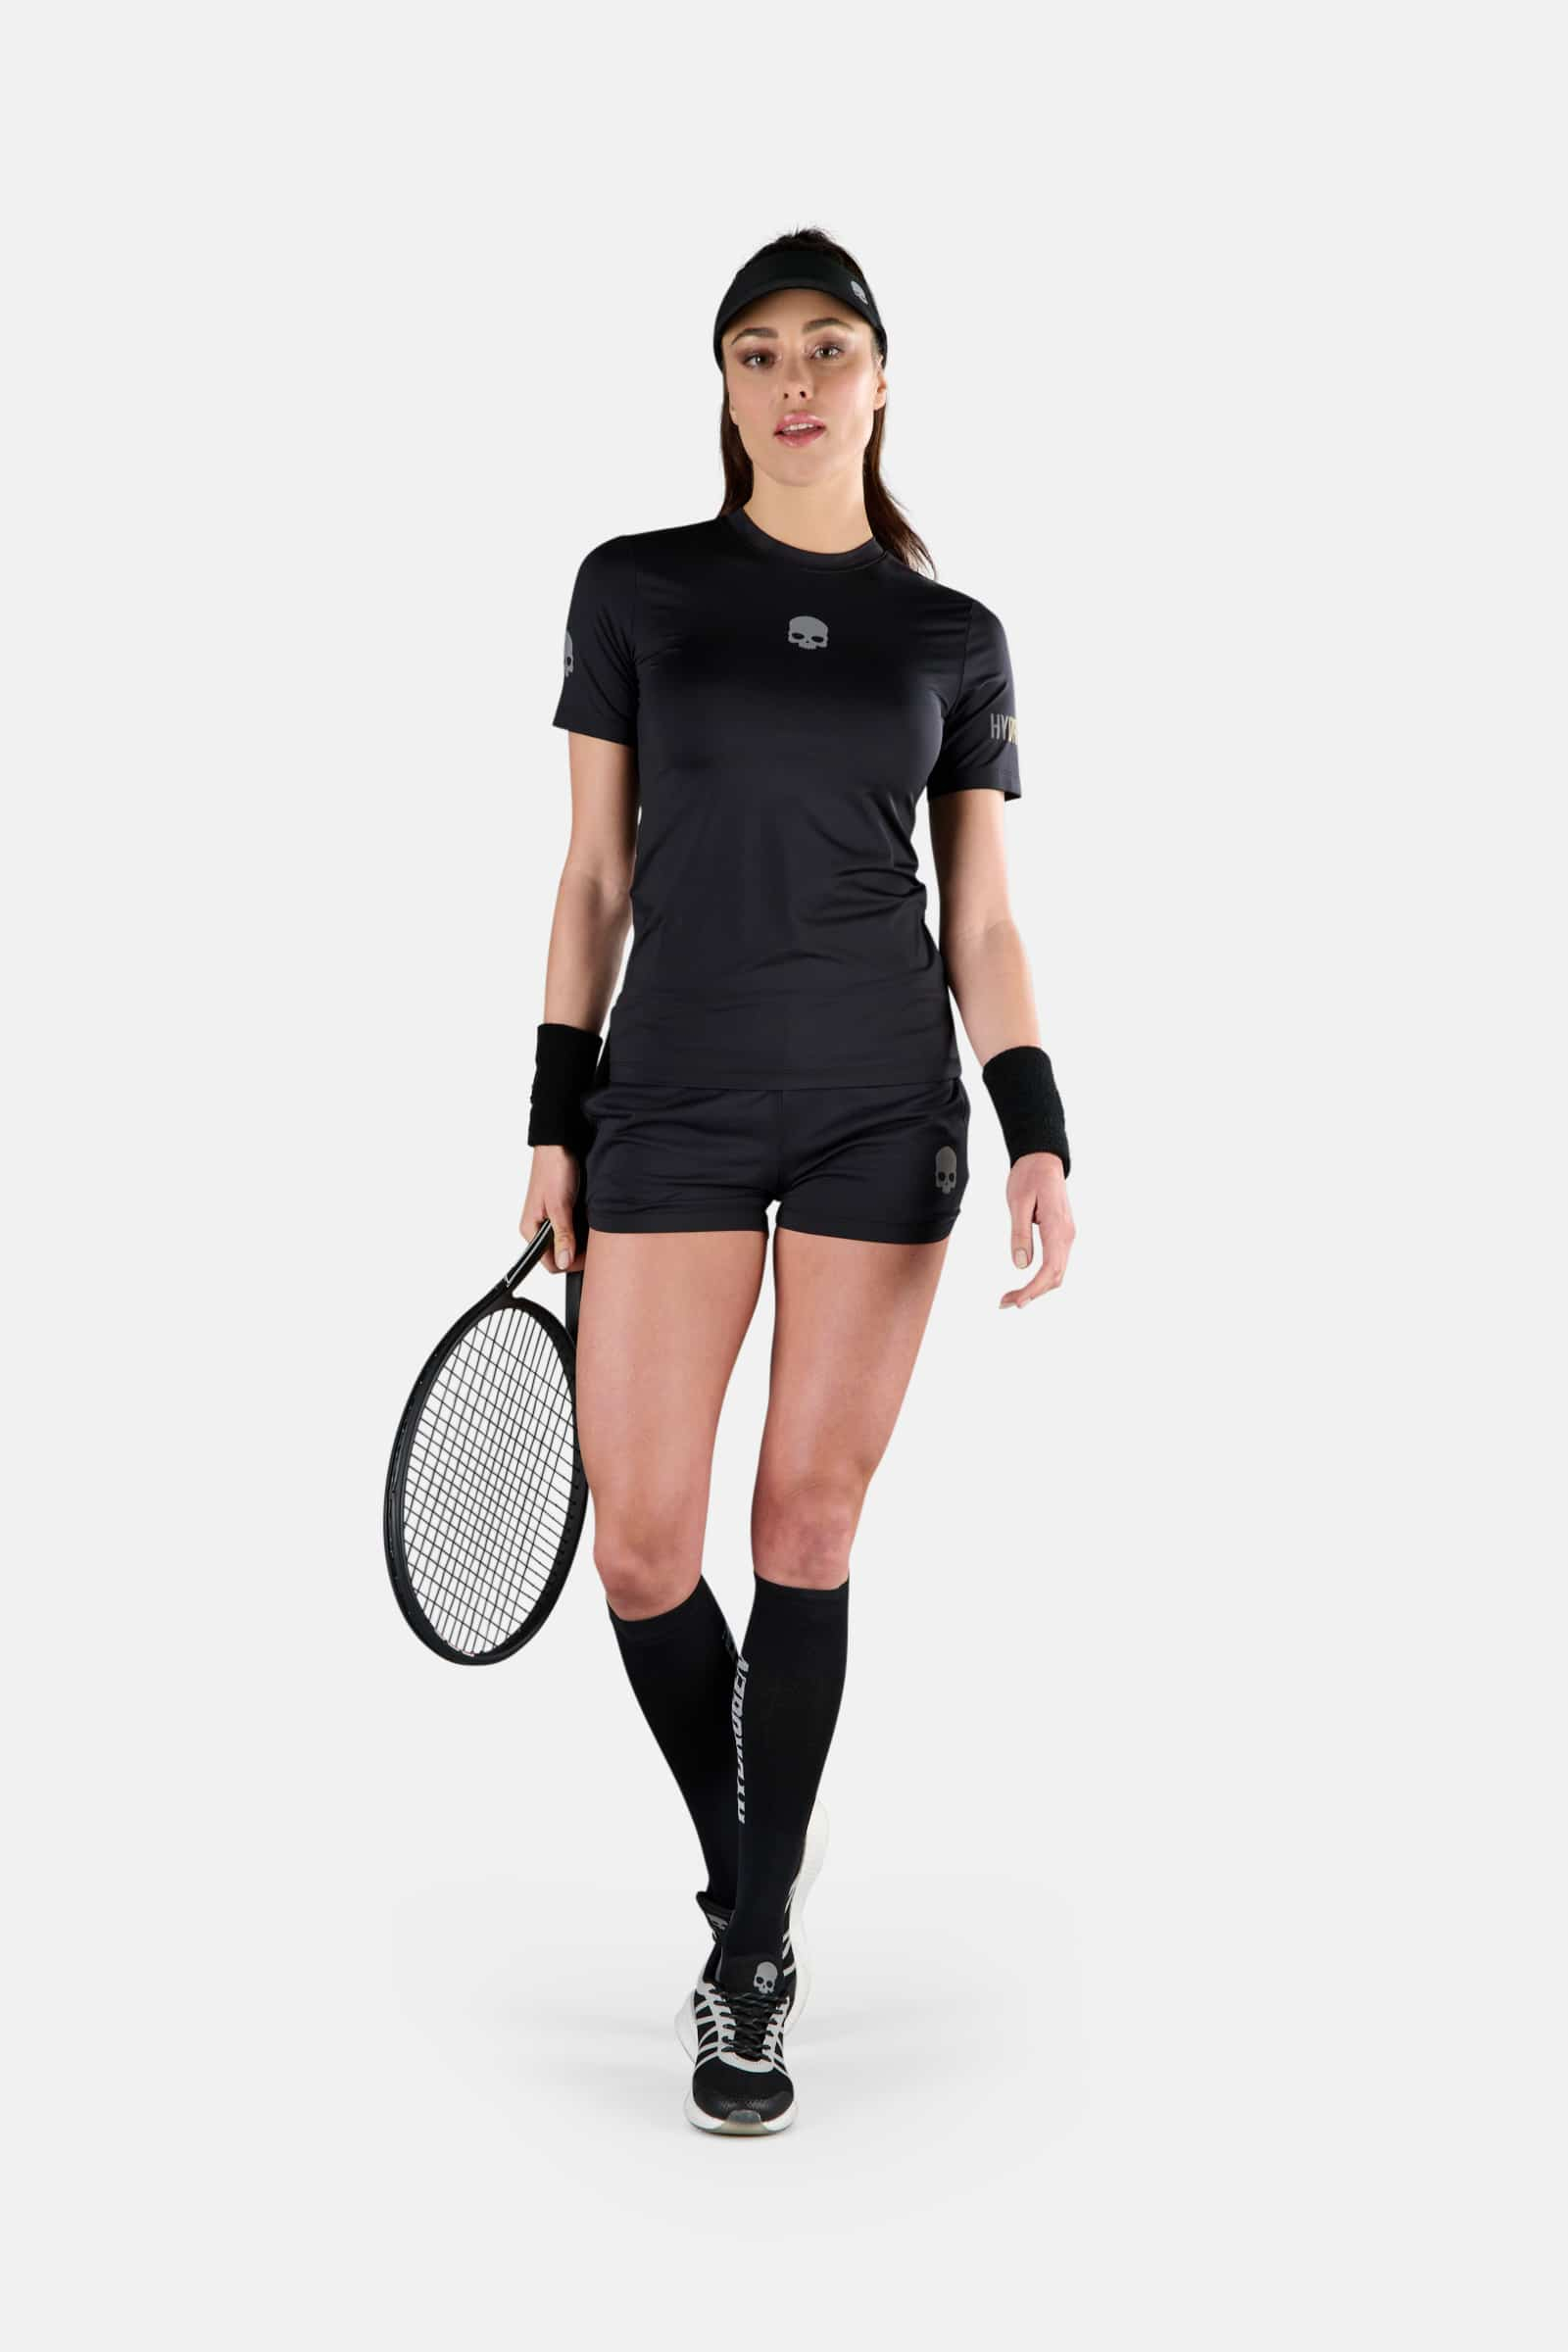 TECH TEE - BLACK - Abbigliamento sportivo | Hydrogen